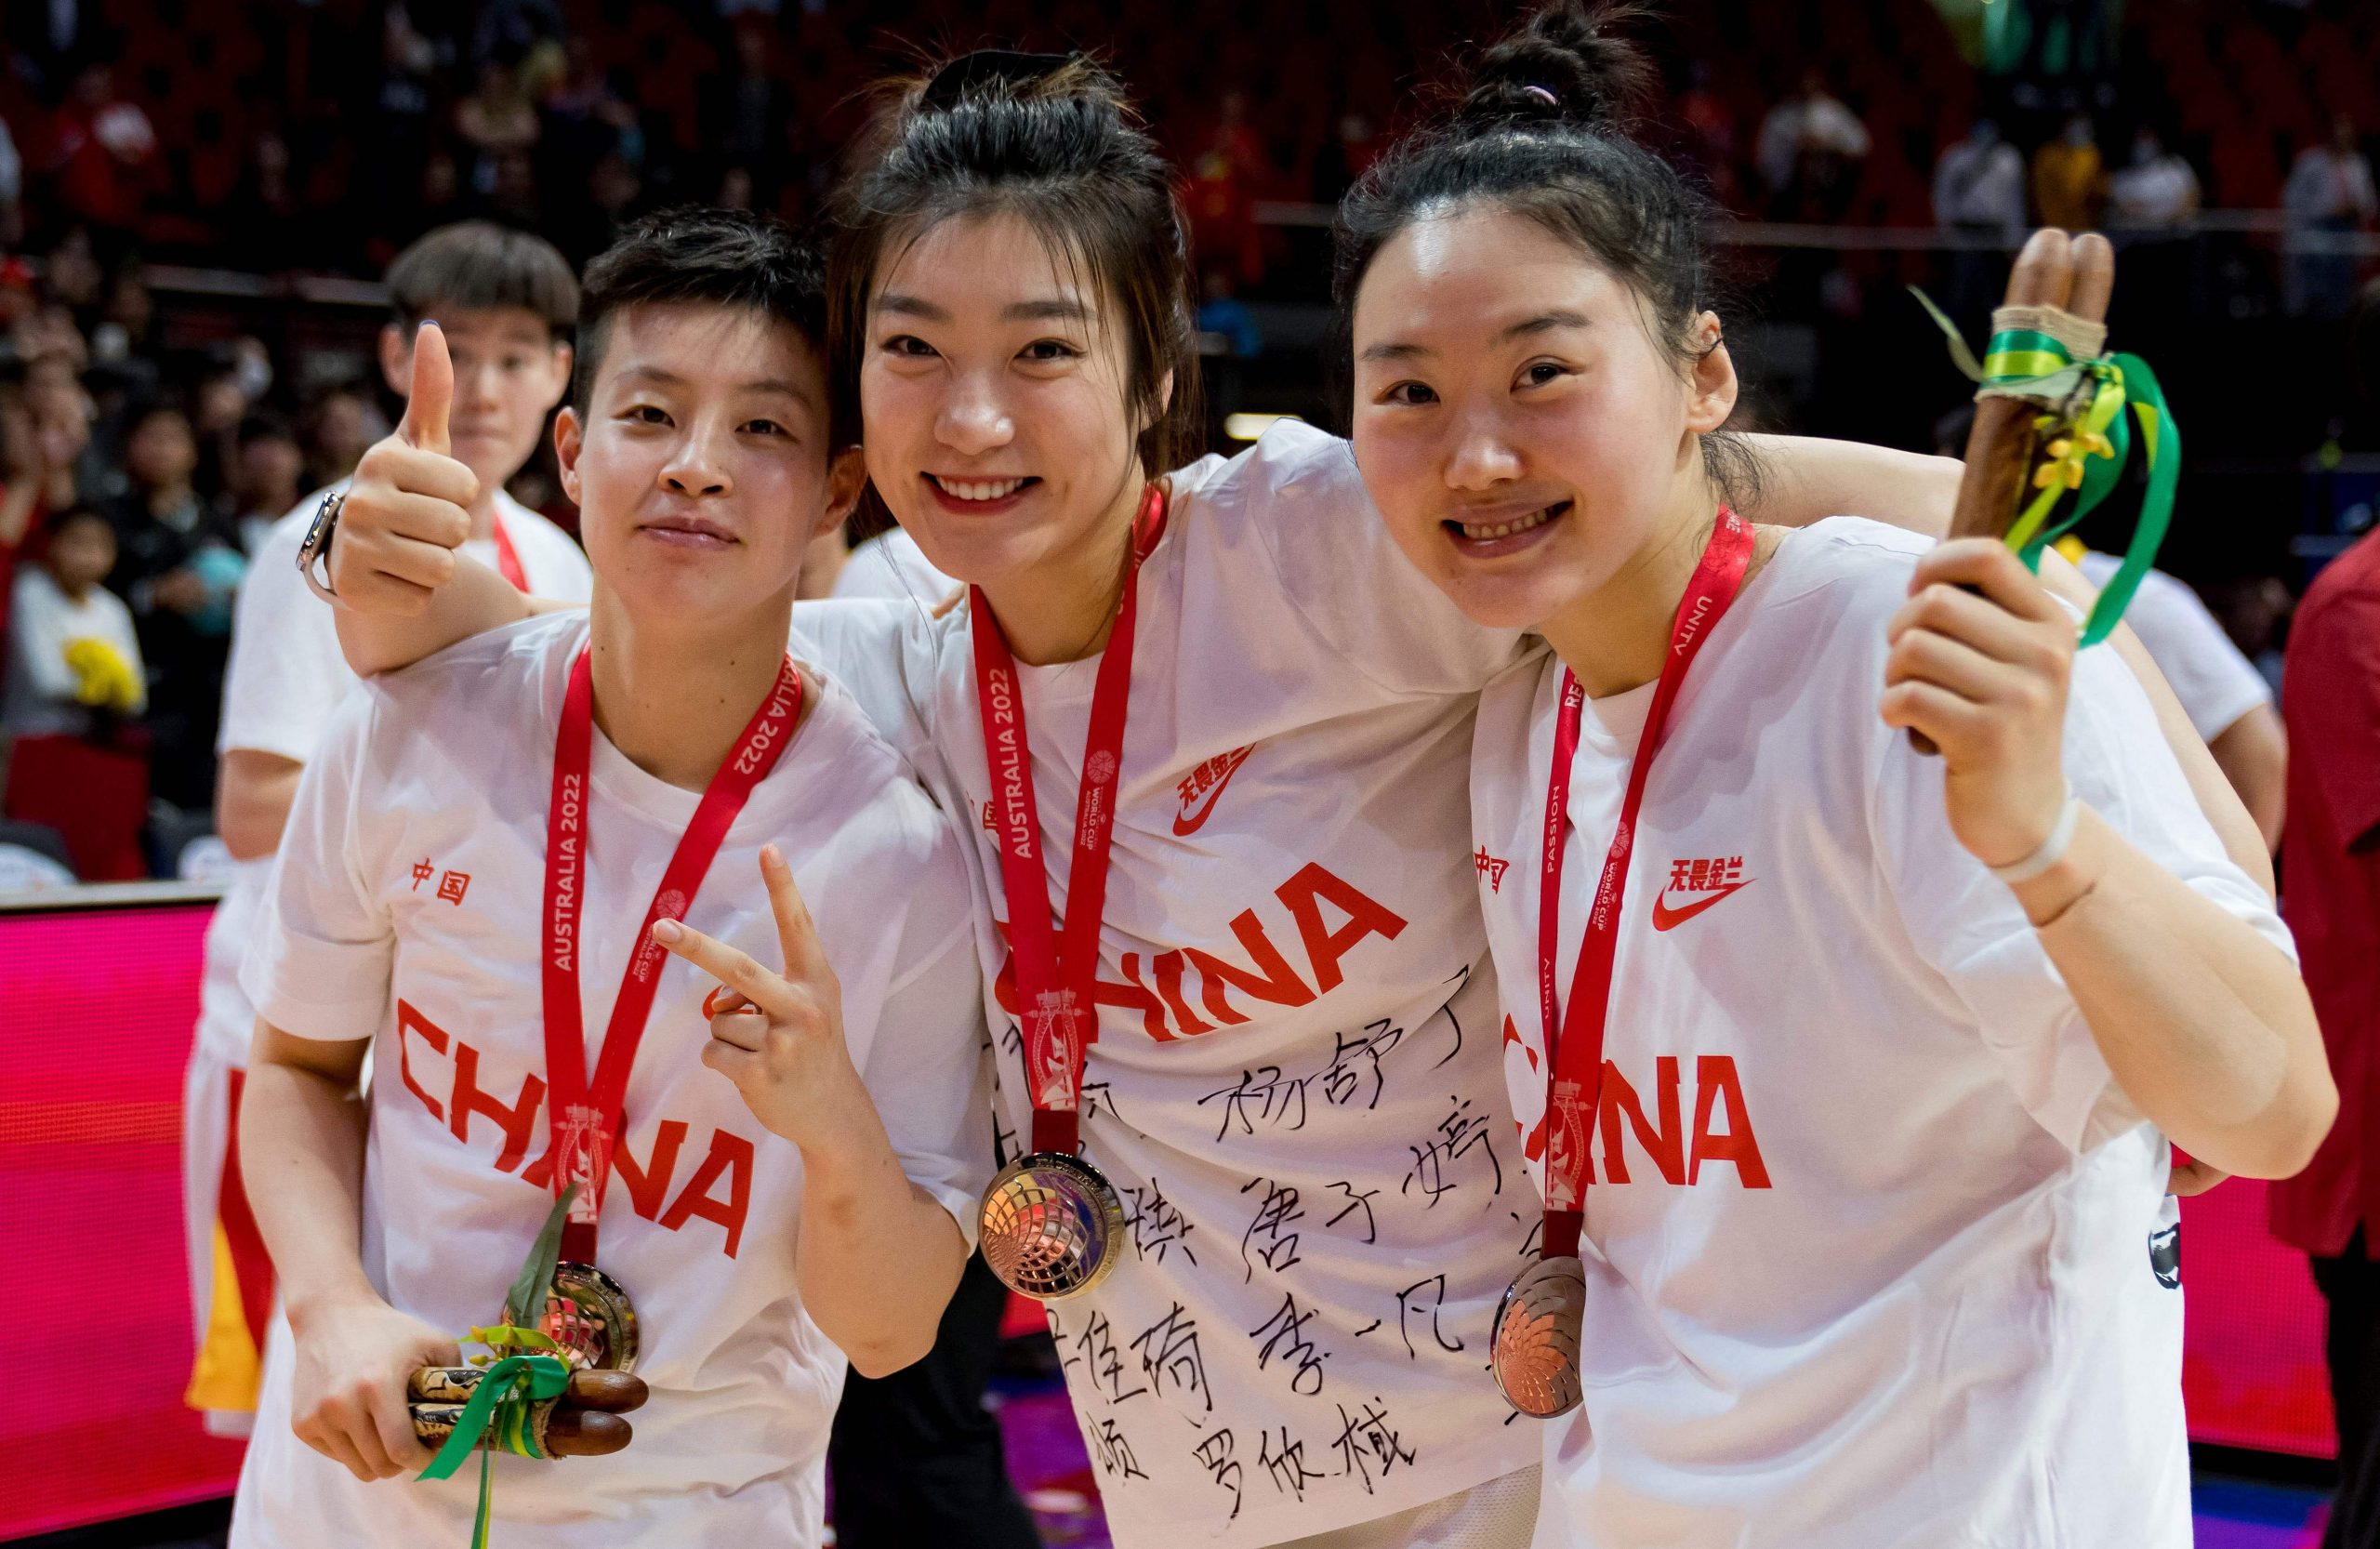 网暴中国女篮运动员 抨发烧缺赛运动员为“逃兵” 多个微博账号被禁言